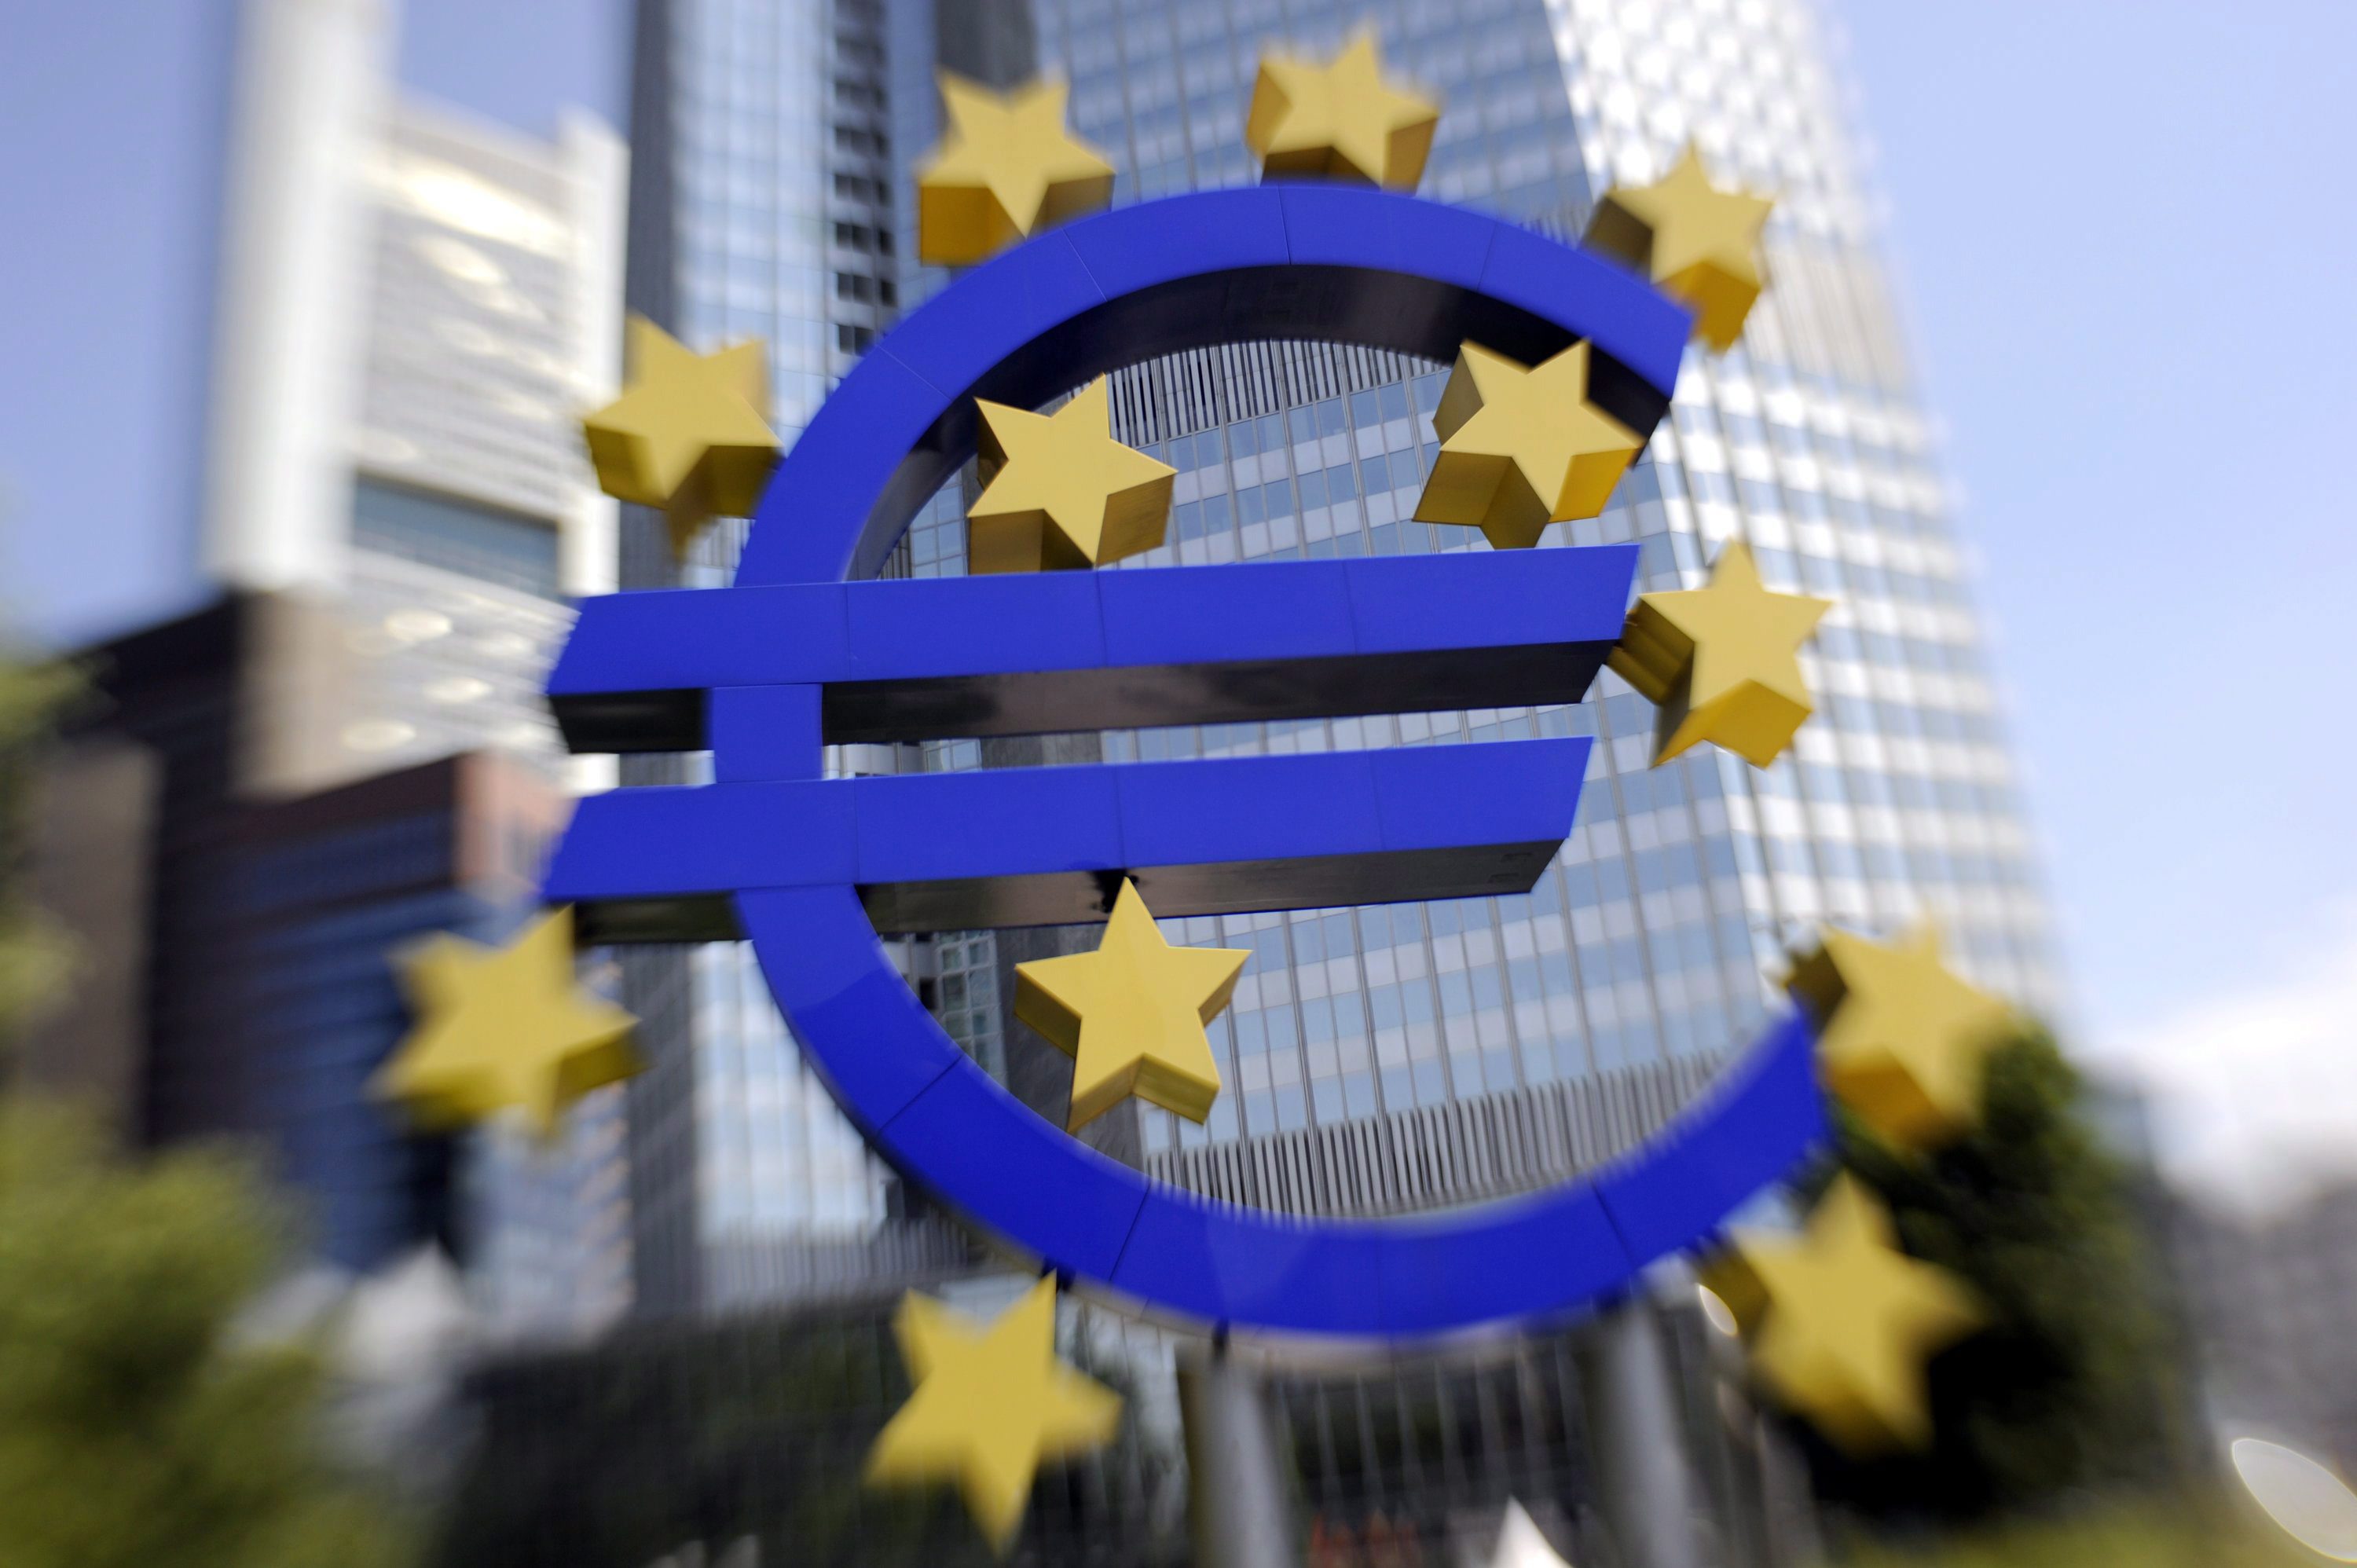 Crescimento das economias da zona euro e UE abranda no 1.º trimestre, diz Eurostat